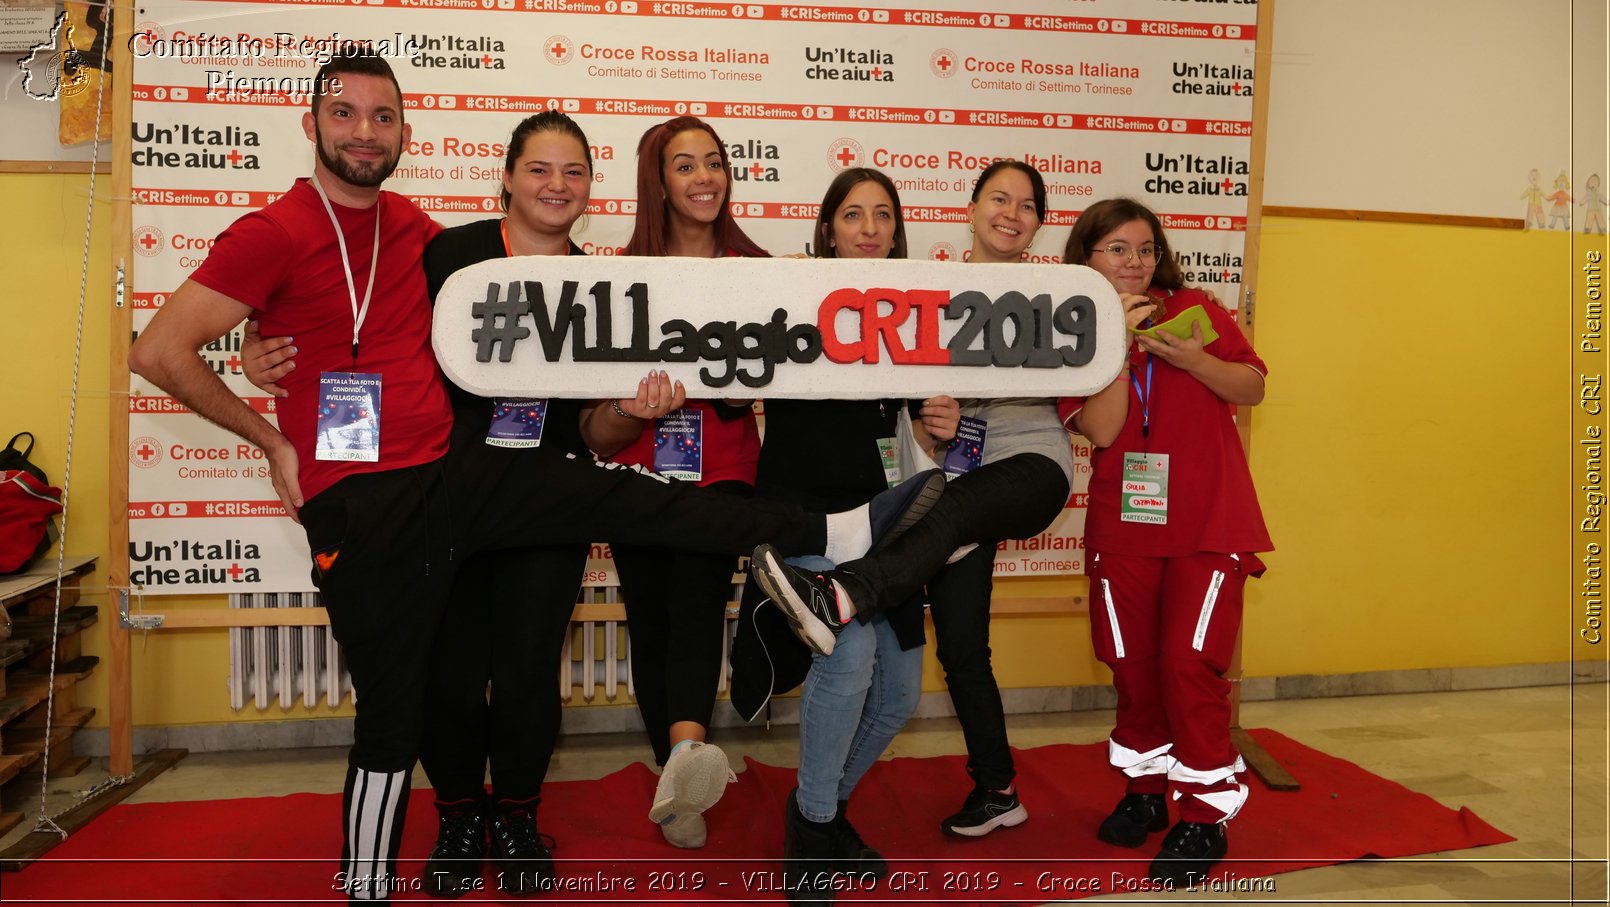 Settimo T.se 1 Novembre 2019 - VILLAGGIO CRI 2019 - Croce Rossa Italiana